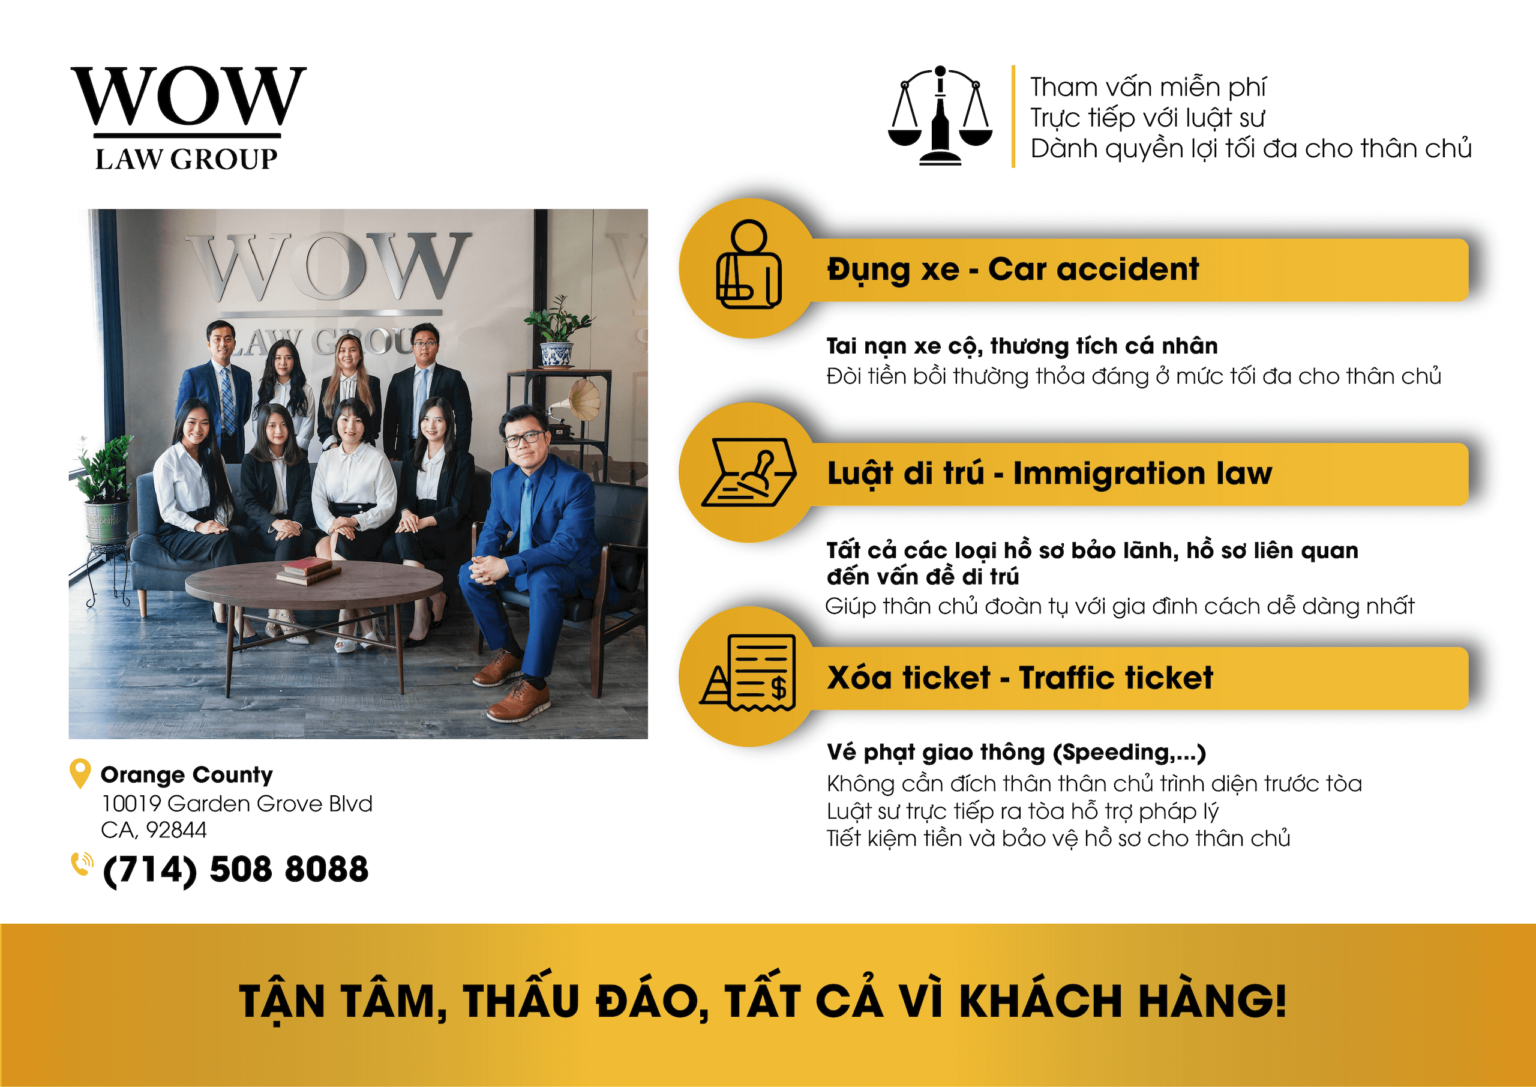 WOW Law Group APC – Dịch Vụ Luật Sư Di Trú Mỹ hàng đầu